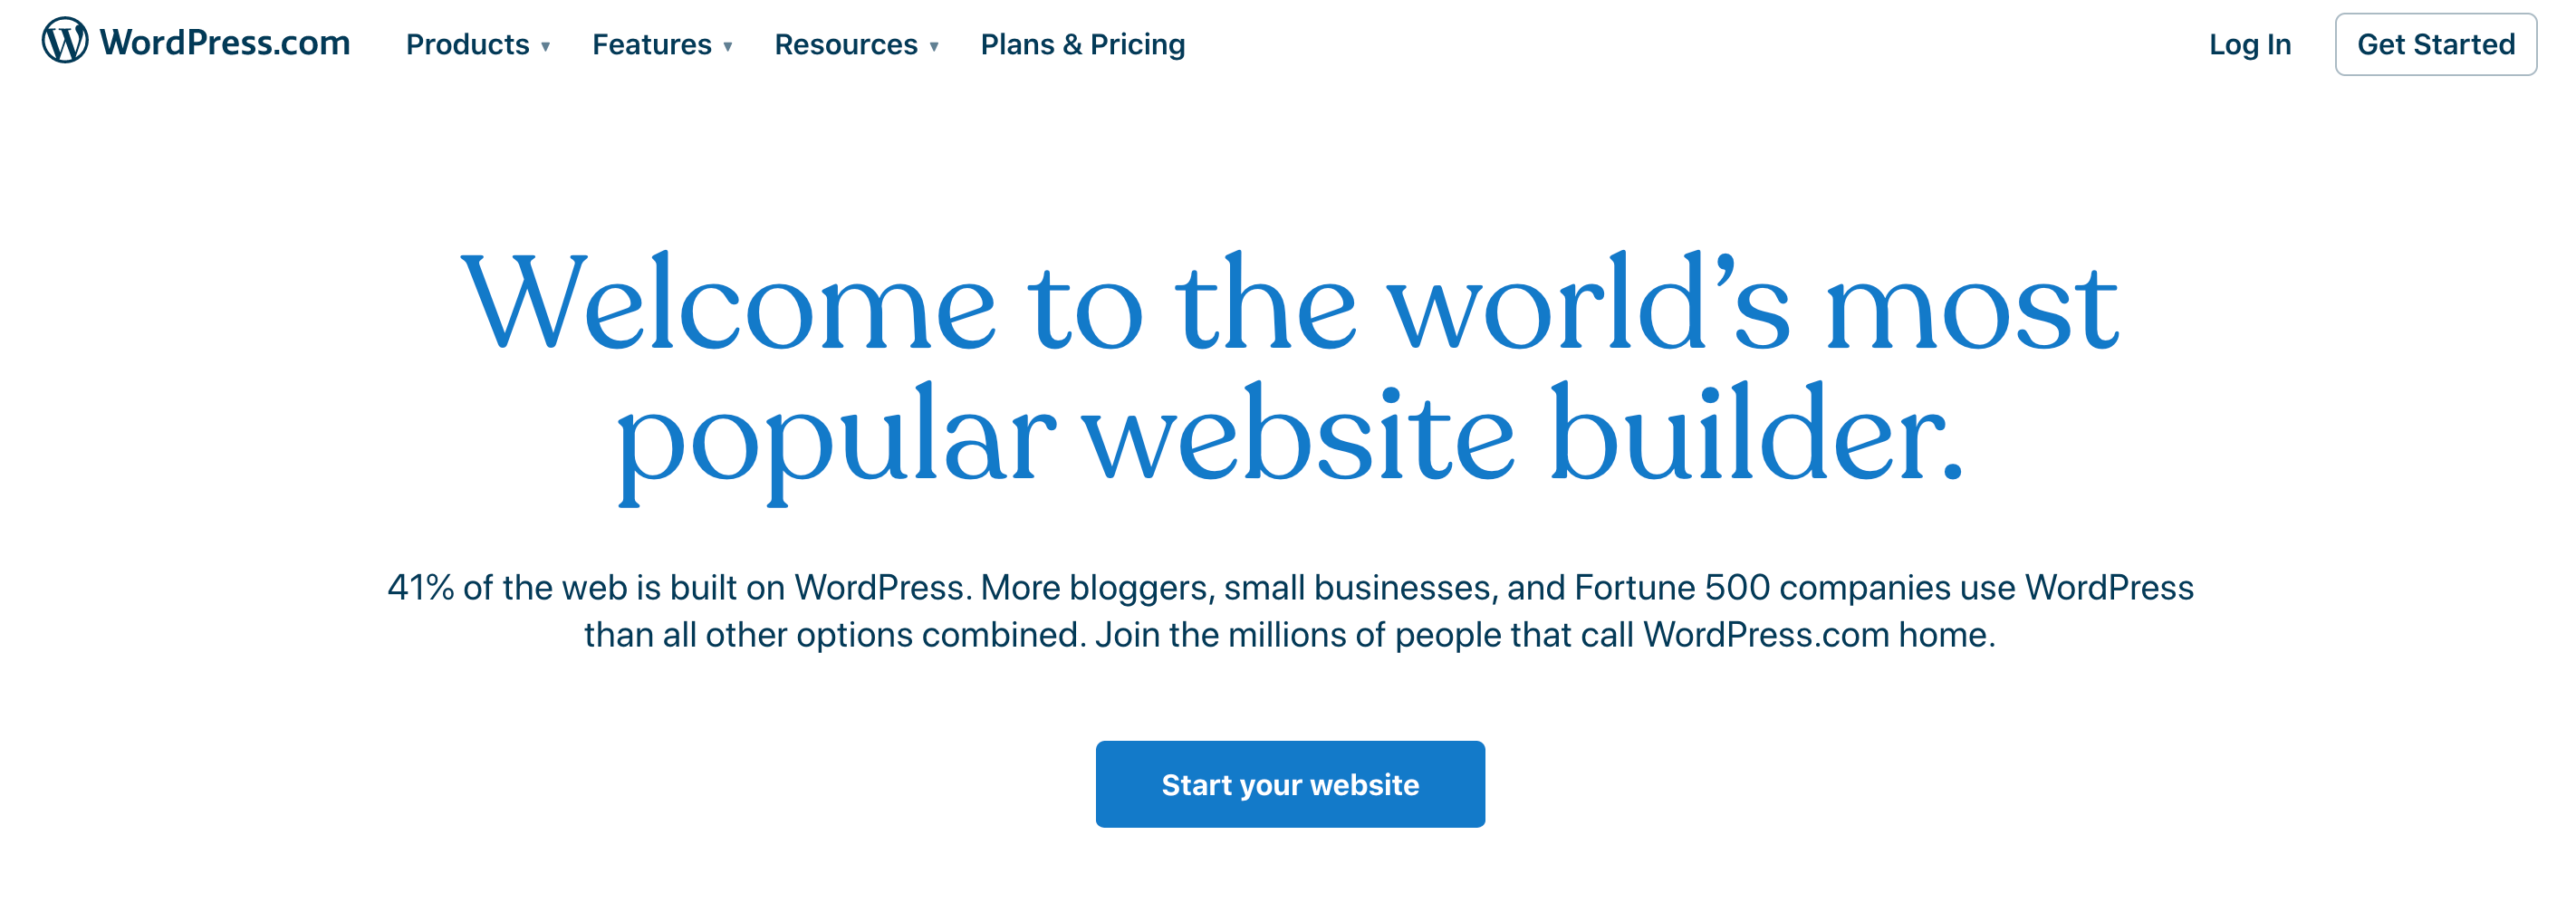 O construtor de sites WordPress.com.